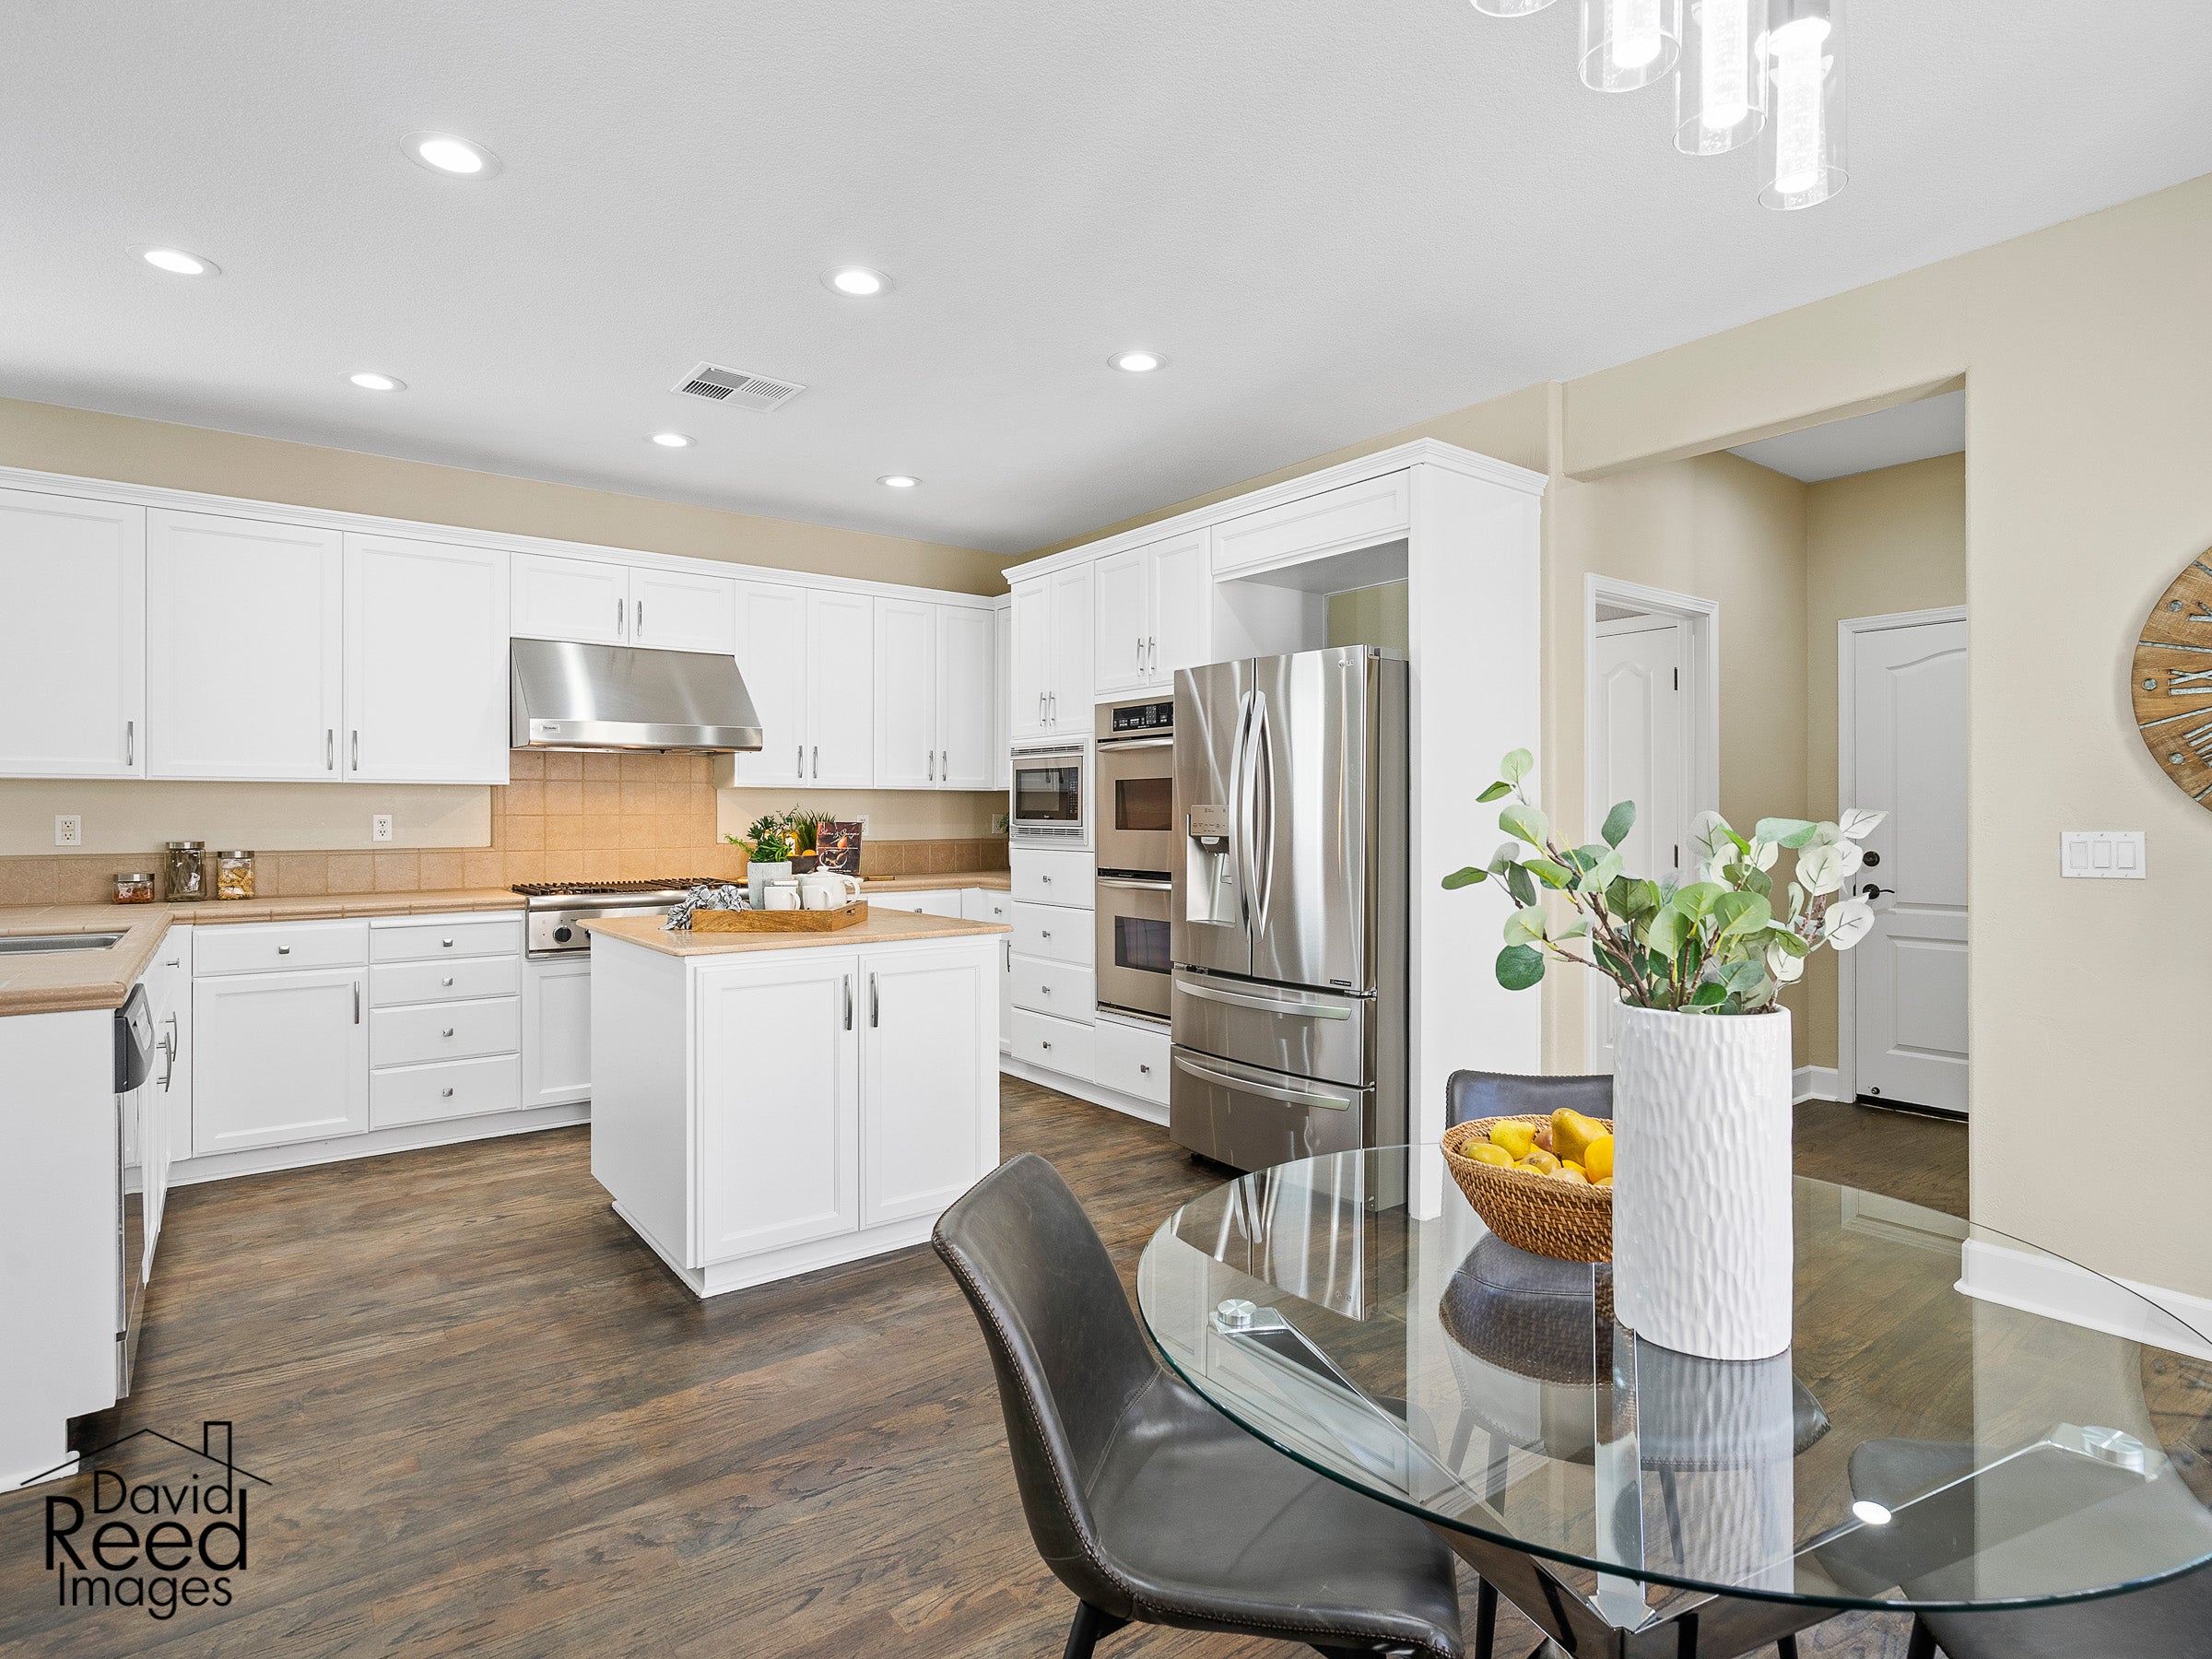 Premiere Home Staging Projects | Kitchen interior design idea - Village Green Dr, El Dorado Hills